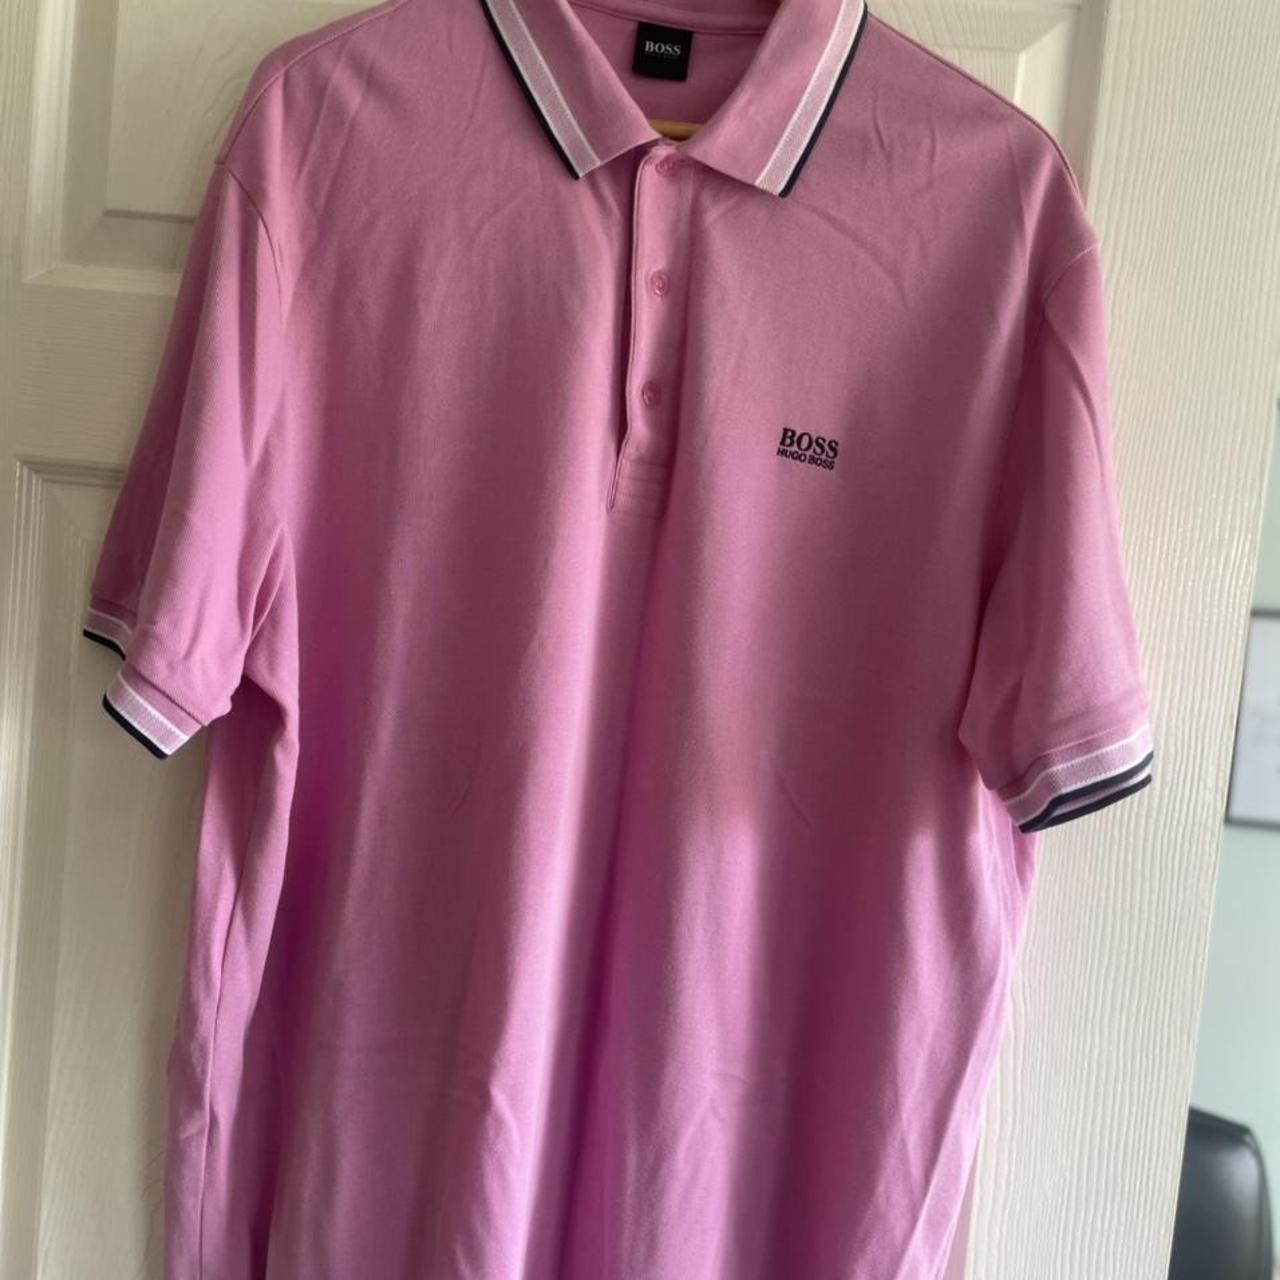 Boss pink polo t-shirt... - Depop